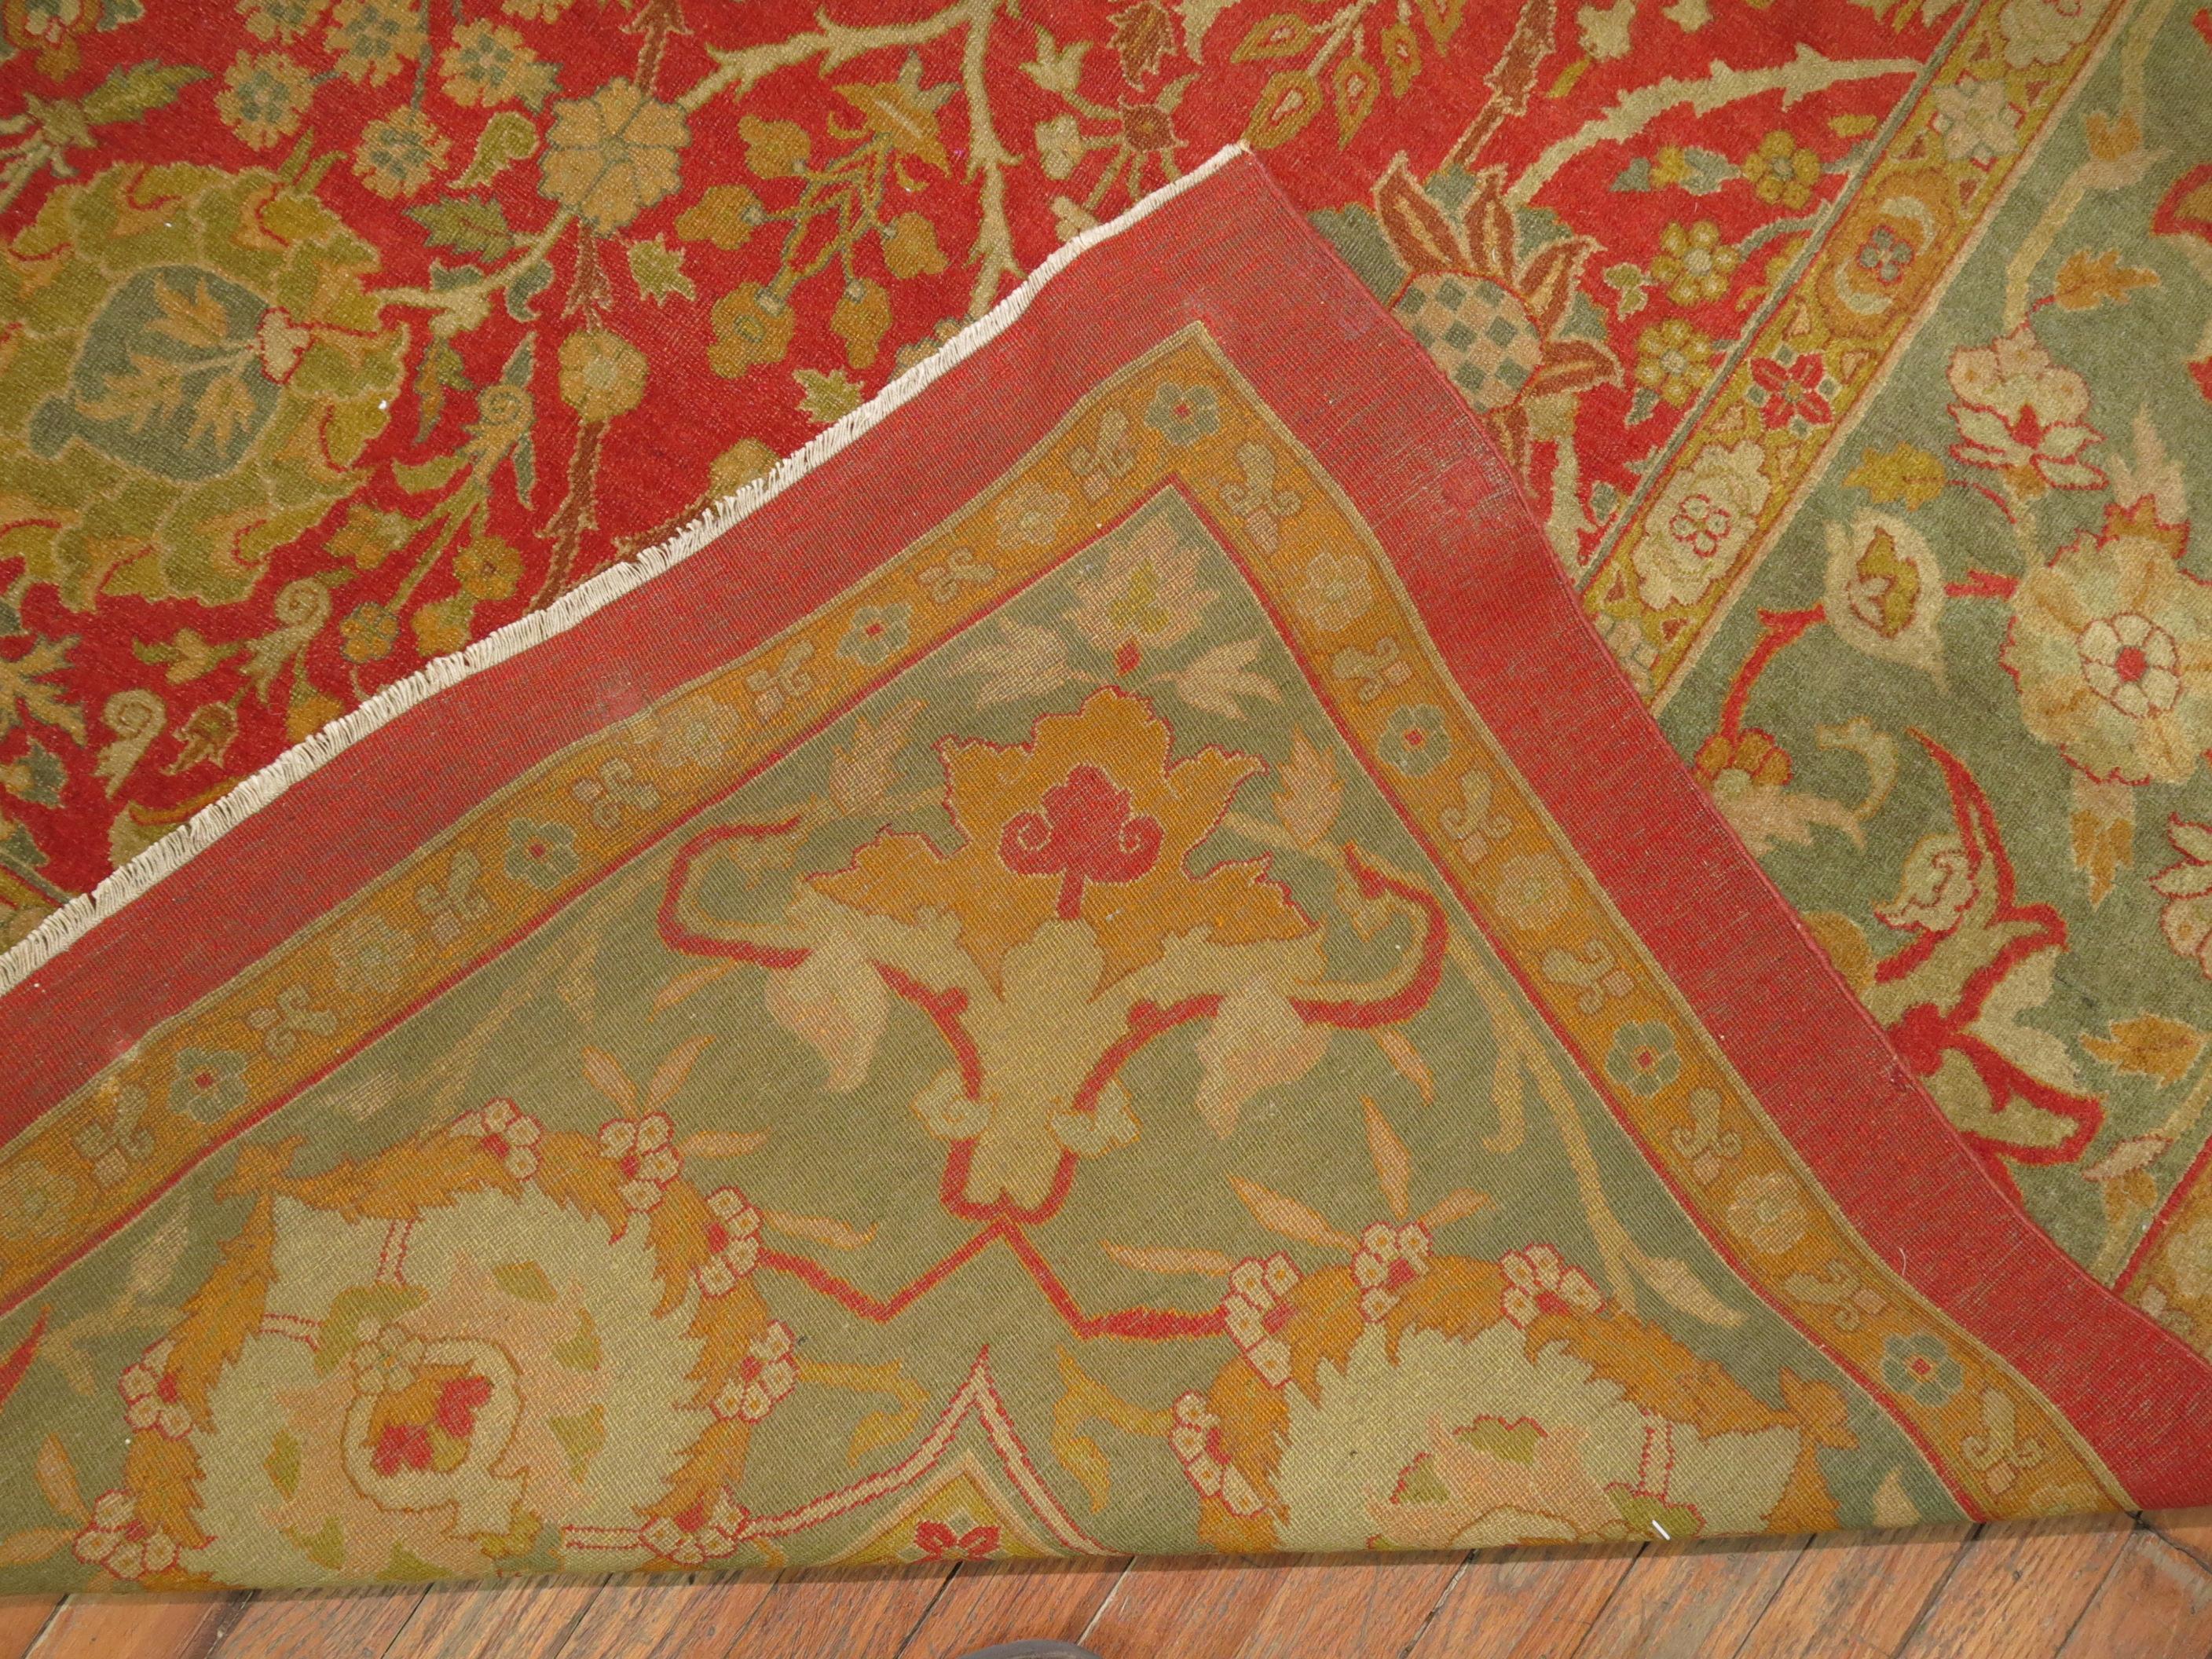 Exquisite superfine mint Zustand 19. Jahrhundert antiken Agra Teppich in reichen und harmonischen Farben.

Eine Elitegruppe der allerfeinsten Teppiche der Agra-Region aus dem 19. Jahrhundert wird der Stadt Amritsar zugeschrieben. Diese sind